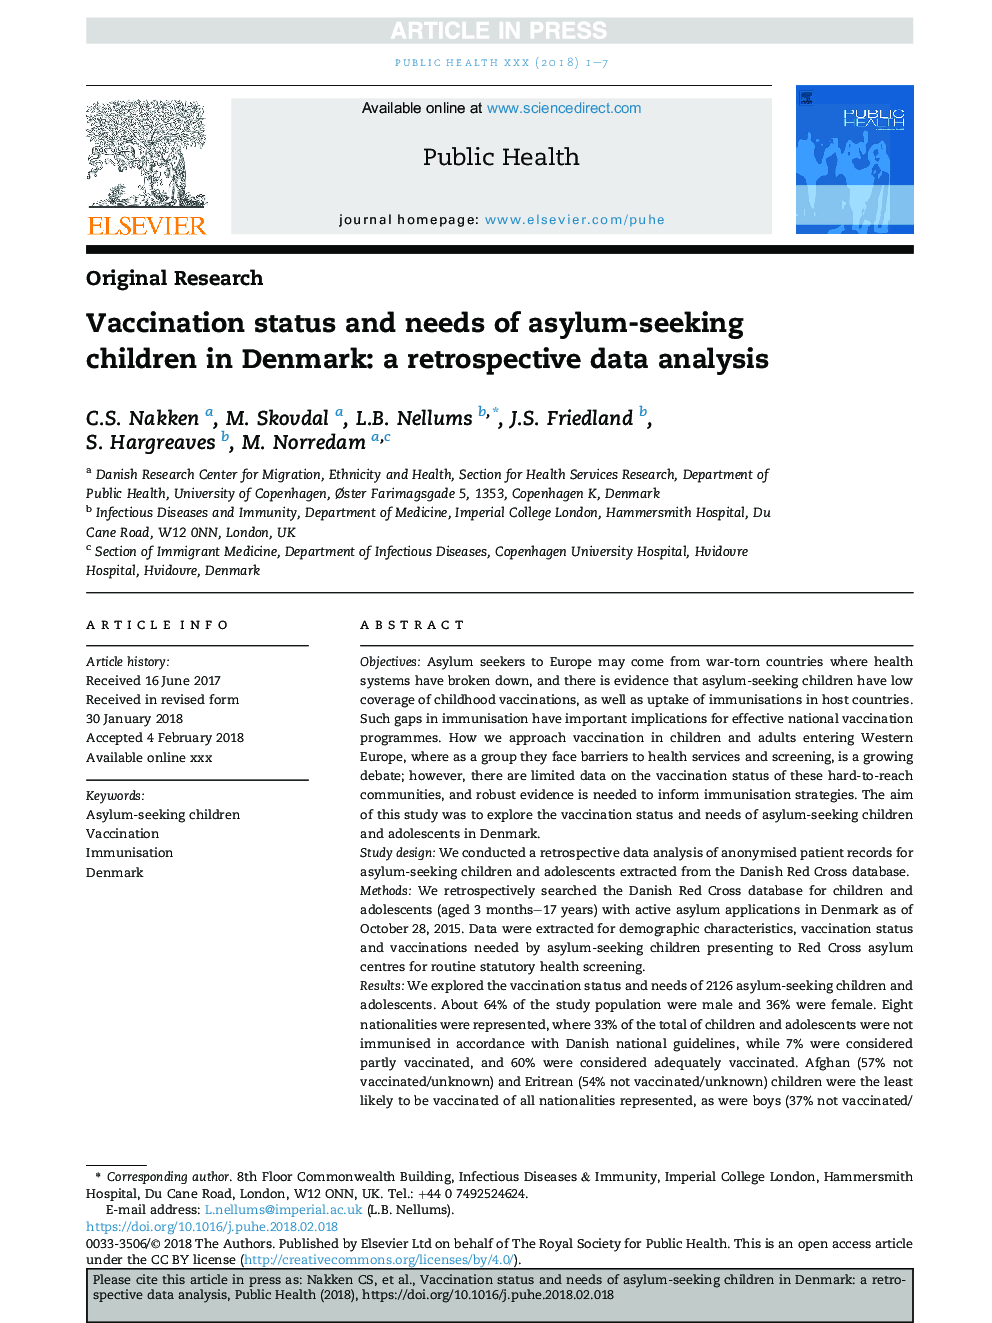 وضعیت واکسیناسیون و نیازهای کودکان پناهجو در دانمارک: تجزیه و تحلیل داده ها گذشته نگر 